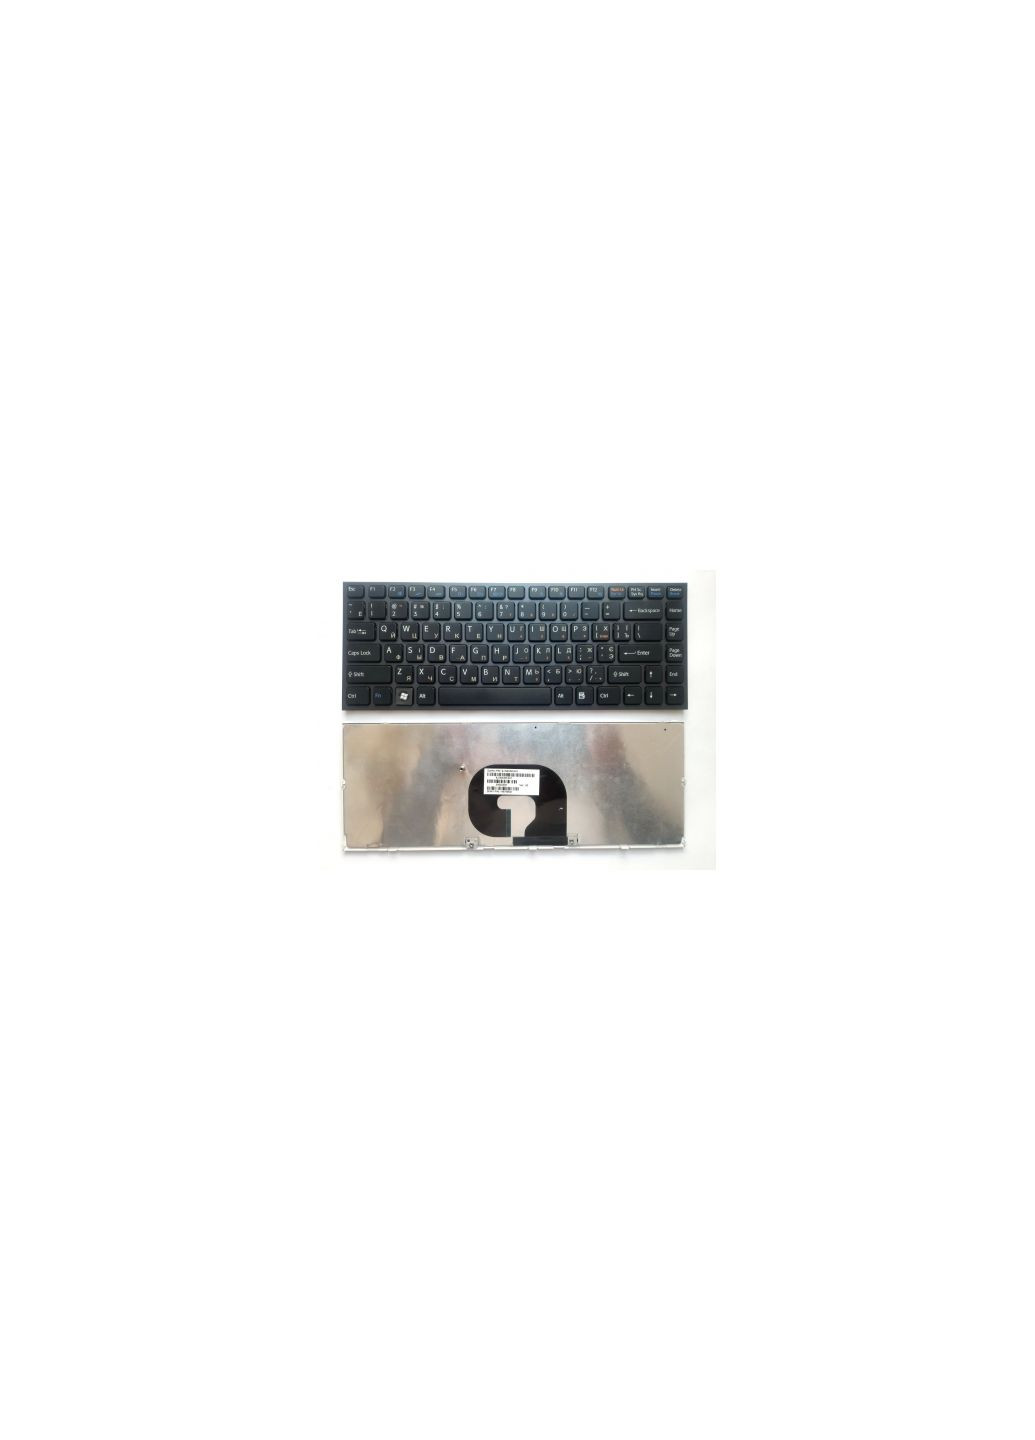 Клавиатура ноутбука VPCY чeрная с темно-серой рамкой UA (A43097) Sony vpc-y чeрная с темно-серой рамкой ua (276707384)